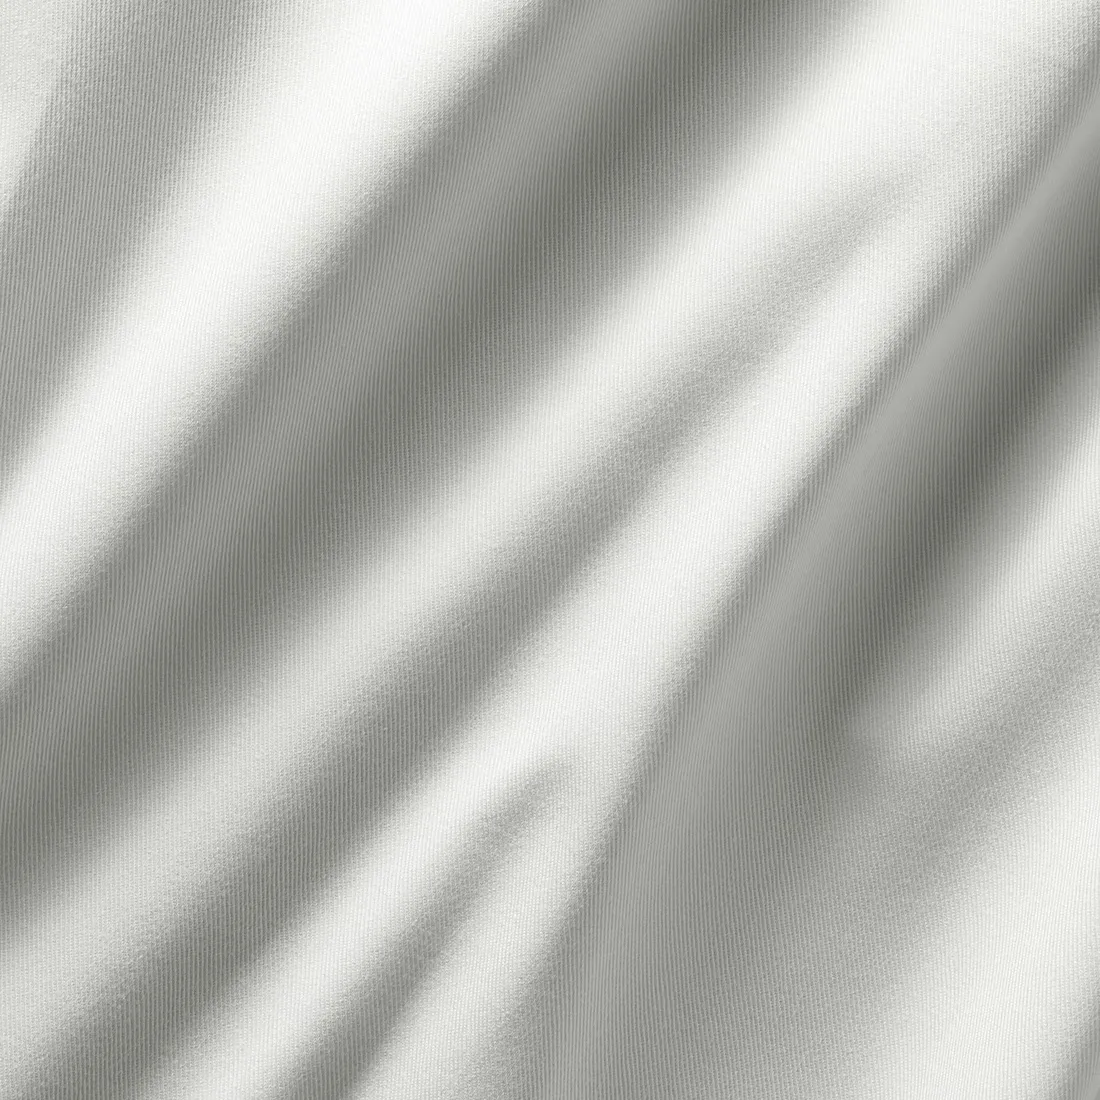 پرده جفت سفید ایکیا مدل MERETE